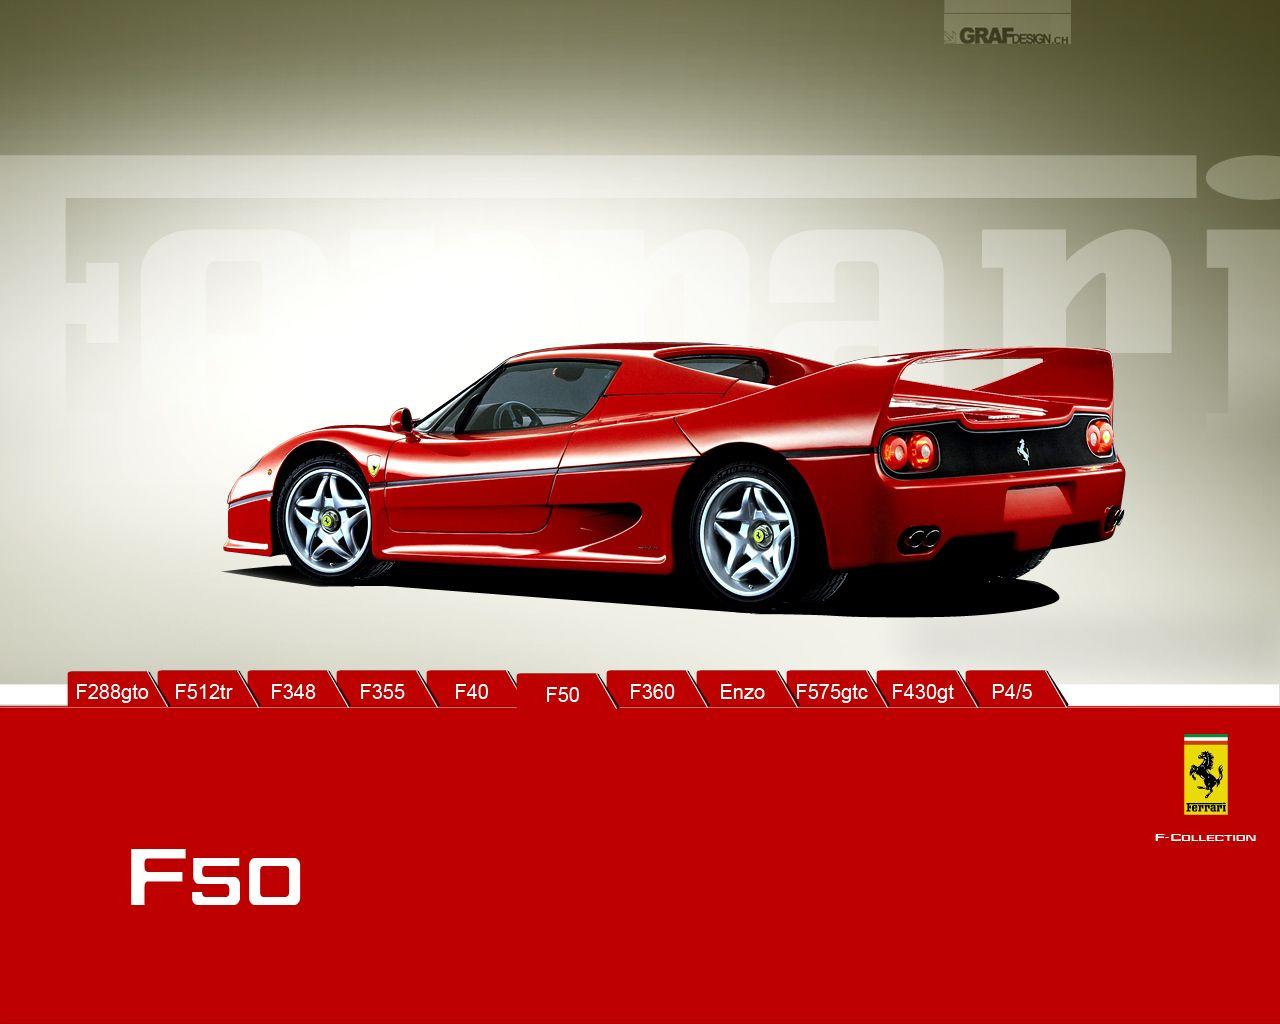 Download Wallpaper: Ferrari F50 Wallpaper